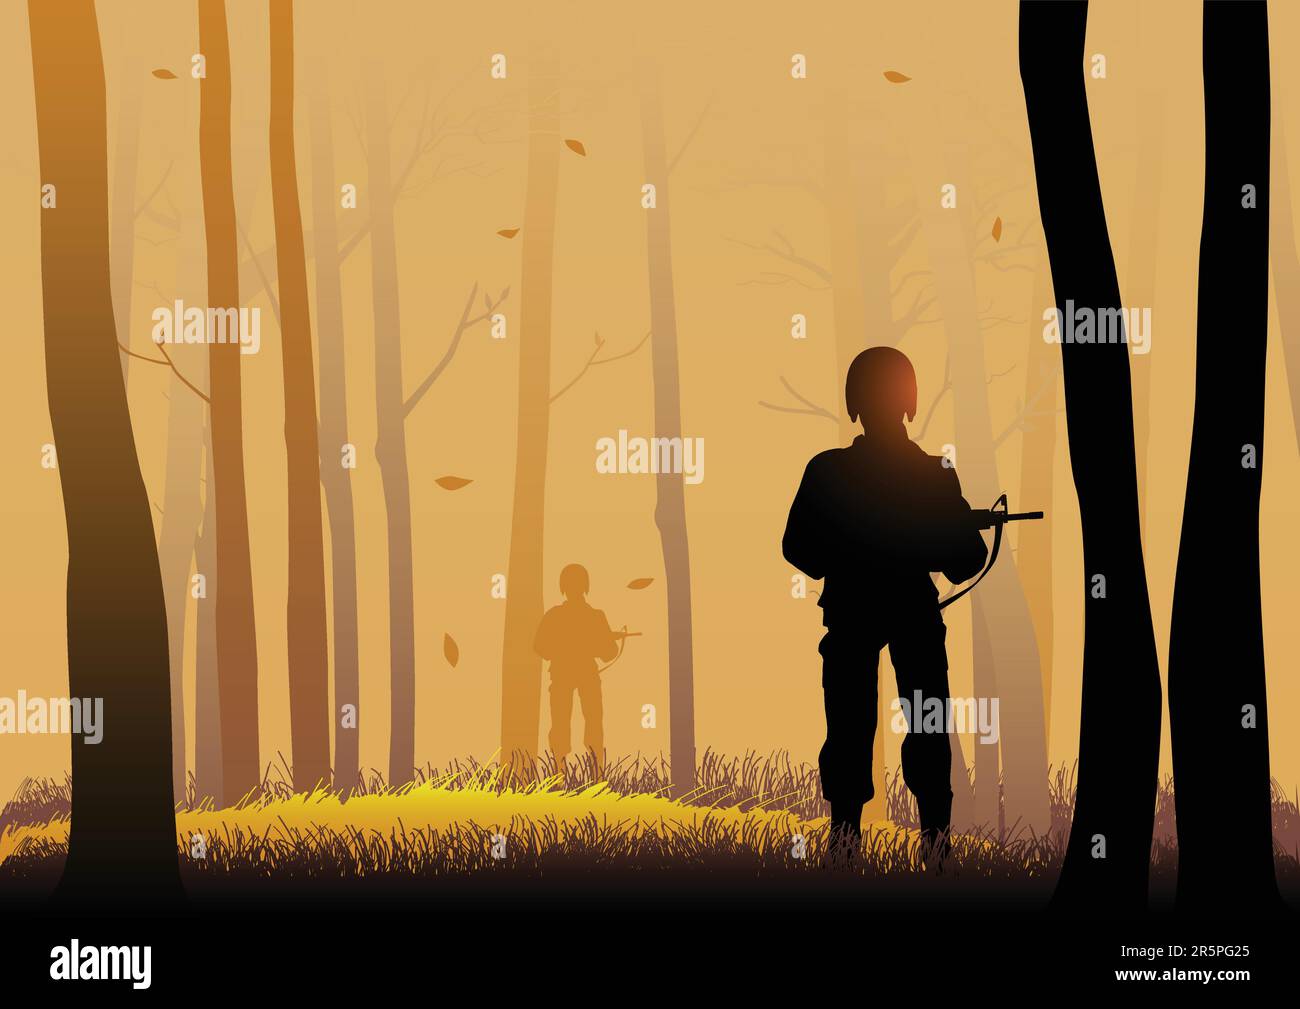 Silhouette illustrazione di soldati nei legni scuri Illustrazione Vettoriale